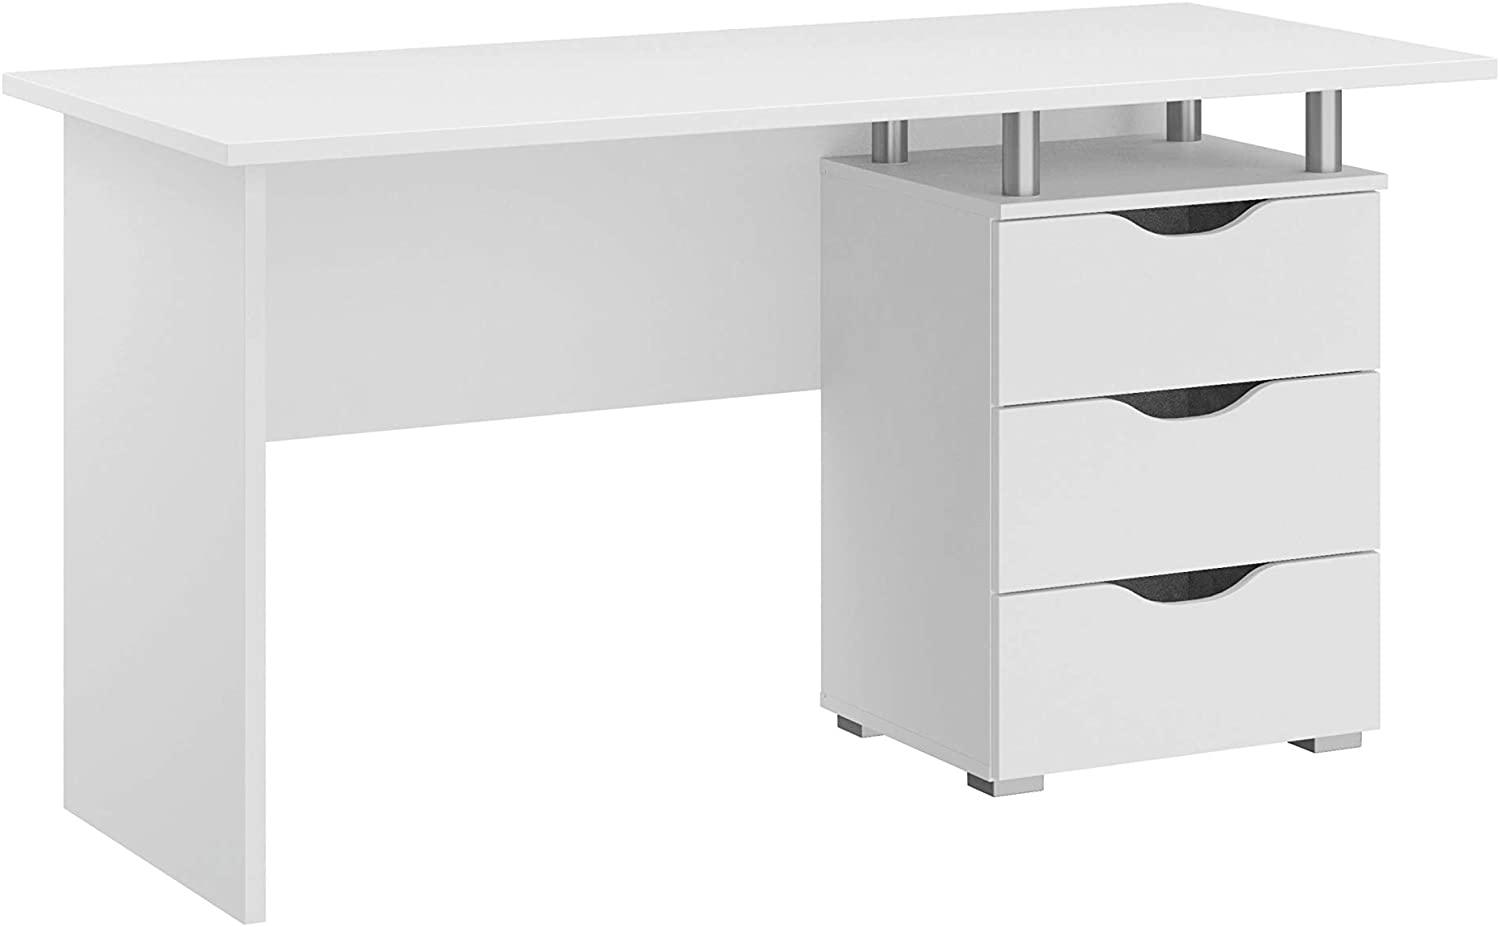 Rauch Möbel 'Alvara' Schreibtisch inklusive 2 Schubladen, weiß,140 x 75 x 66 cm Bild 1